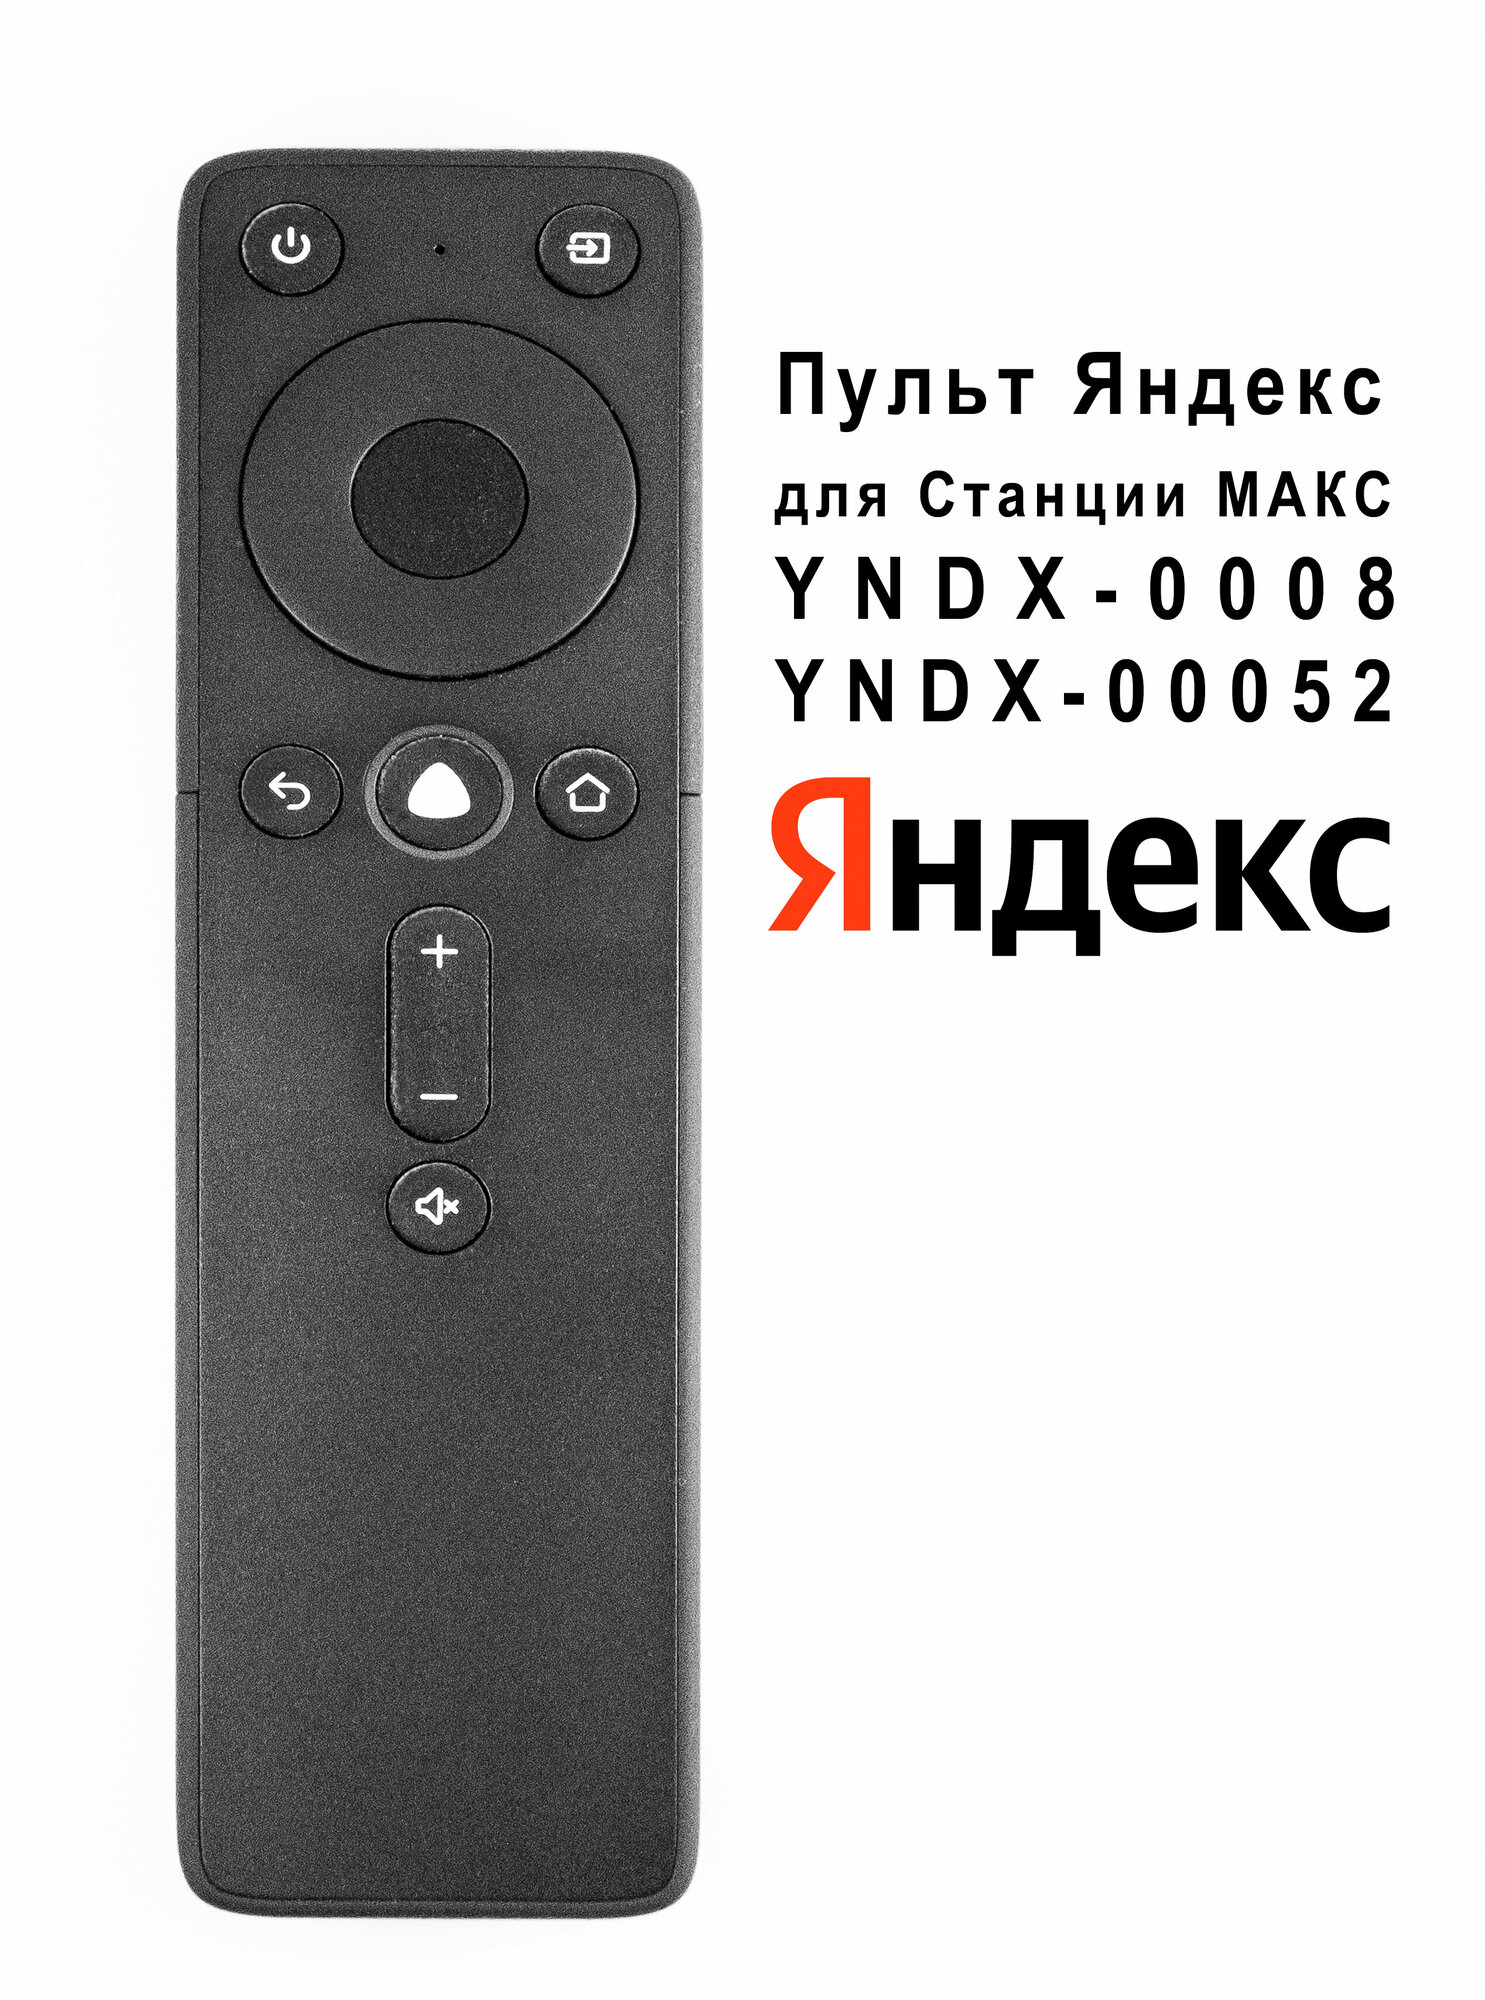 Пульт Яндекс YNDX-00401 оригинальный для Яндекс (Yandex) Станция Макс YNDX-00008 YNDX-00052, черный